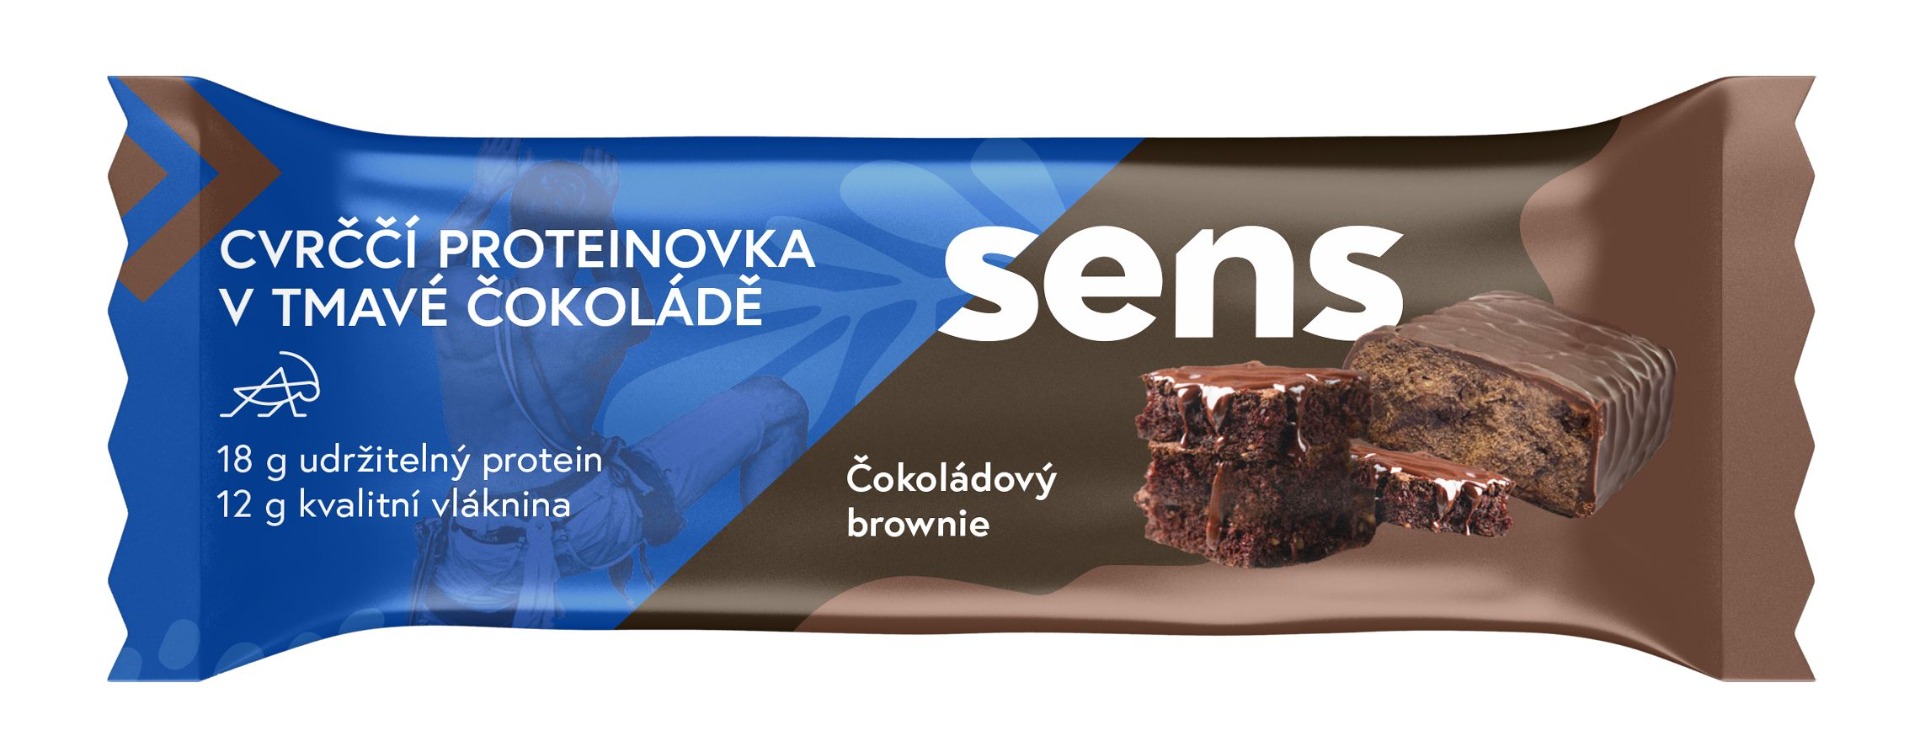 SENS Cvrččí proteinovka v tmavé čokoládě Čokoládový brownie 60 g SENS